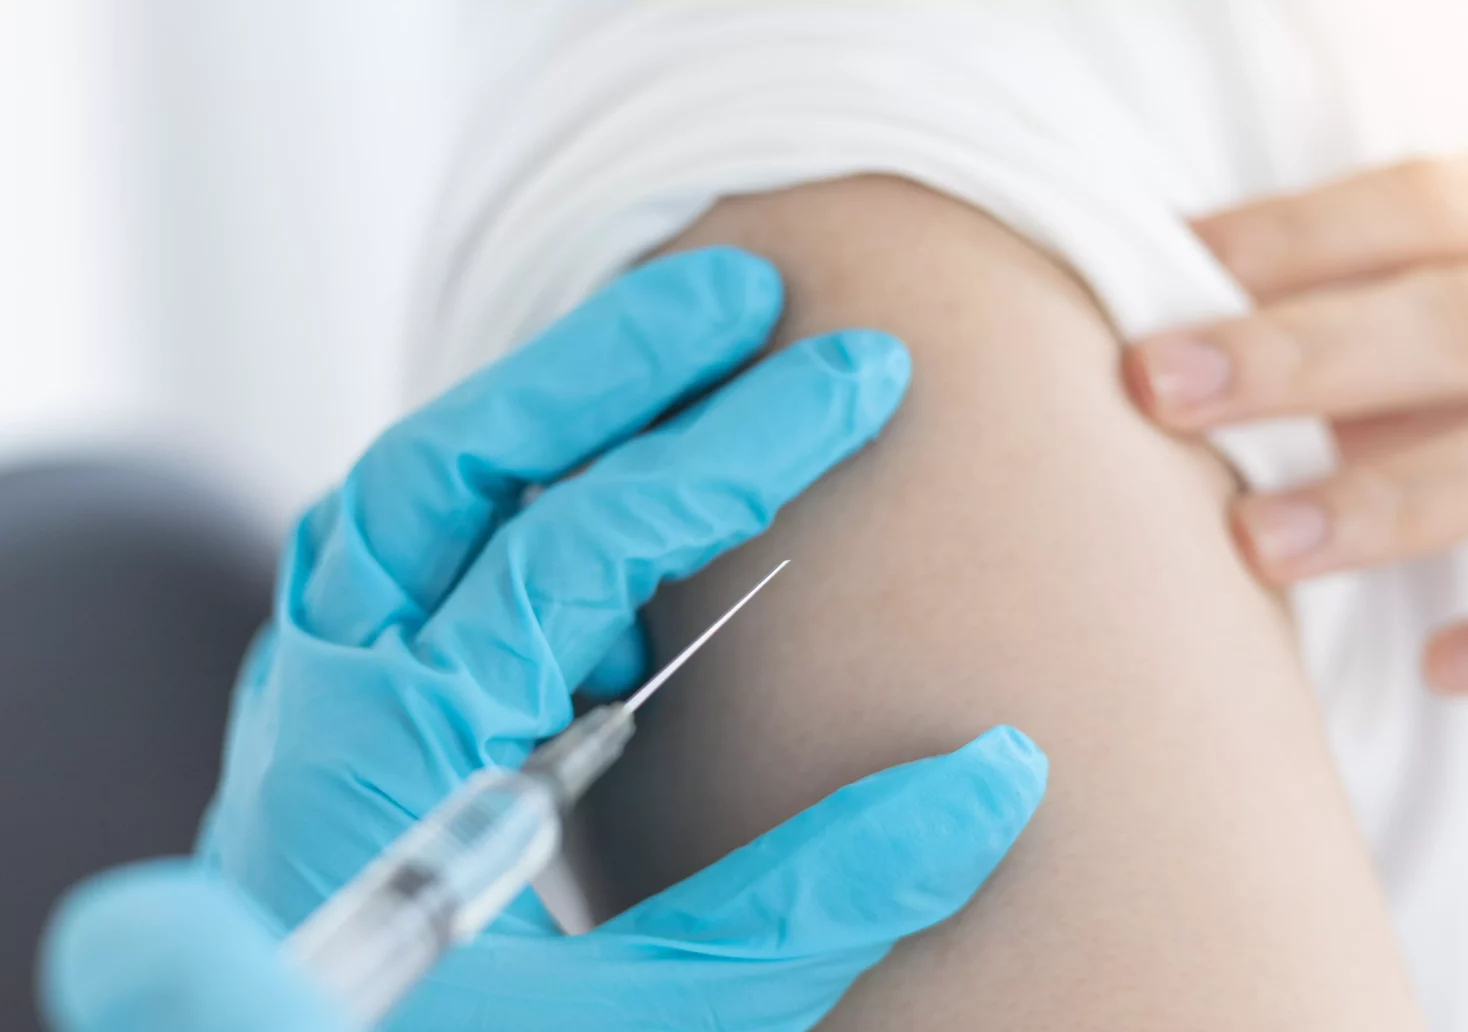 Bis zum 30. Geburtstag: Diese Impfung soll kostenlos werden